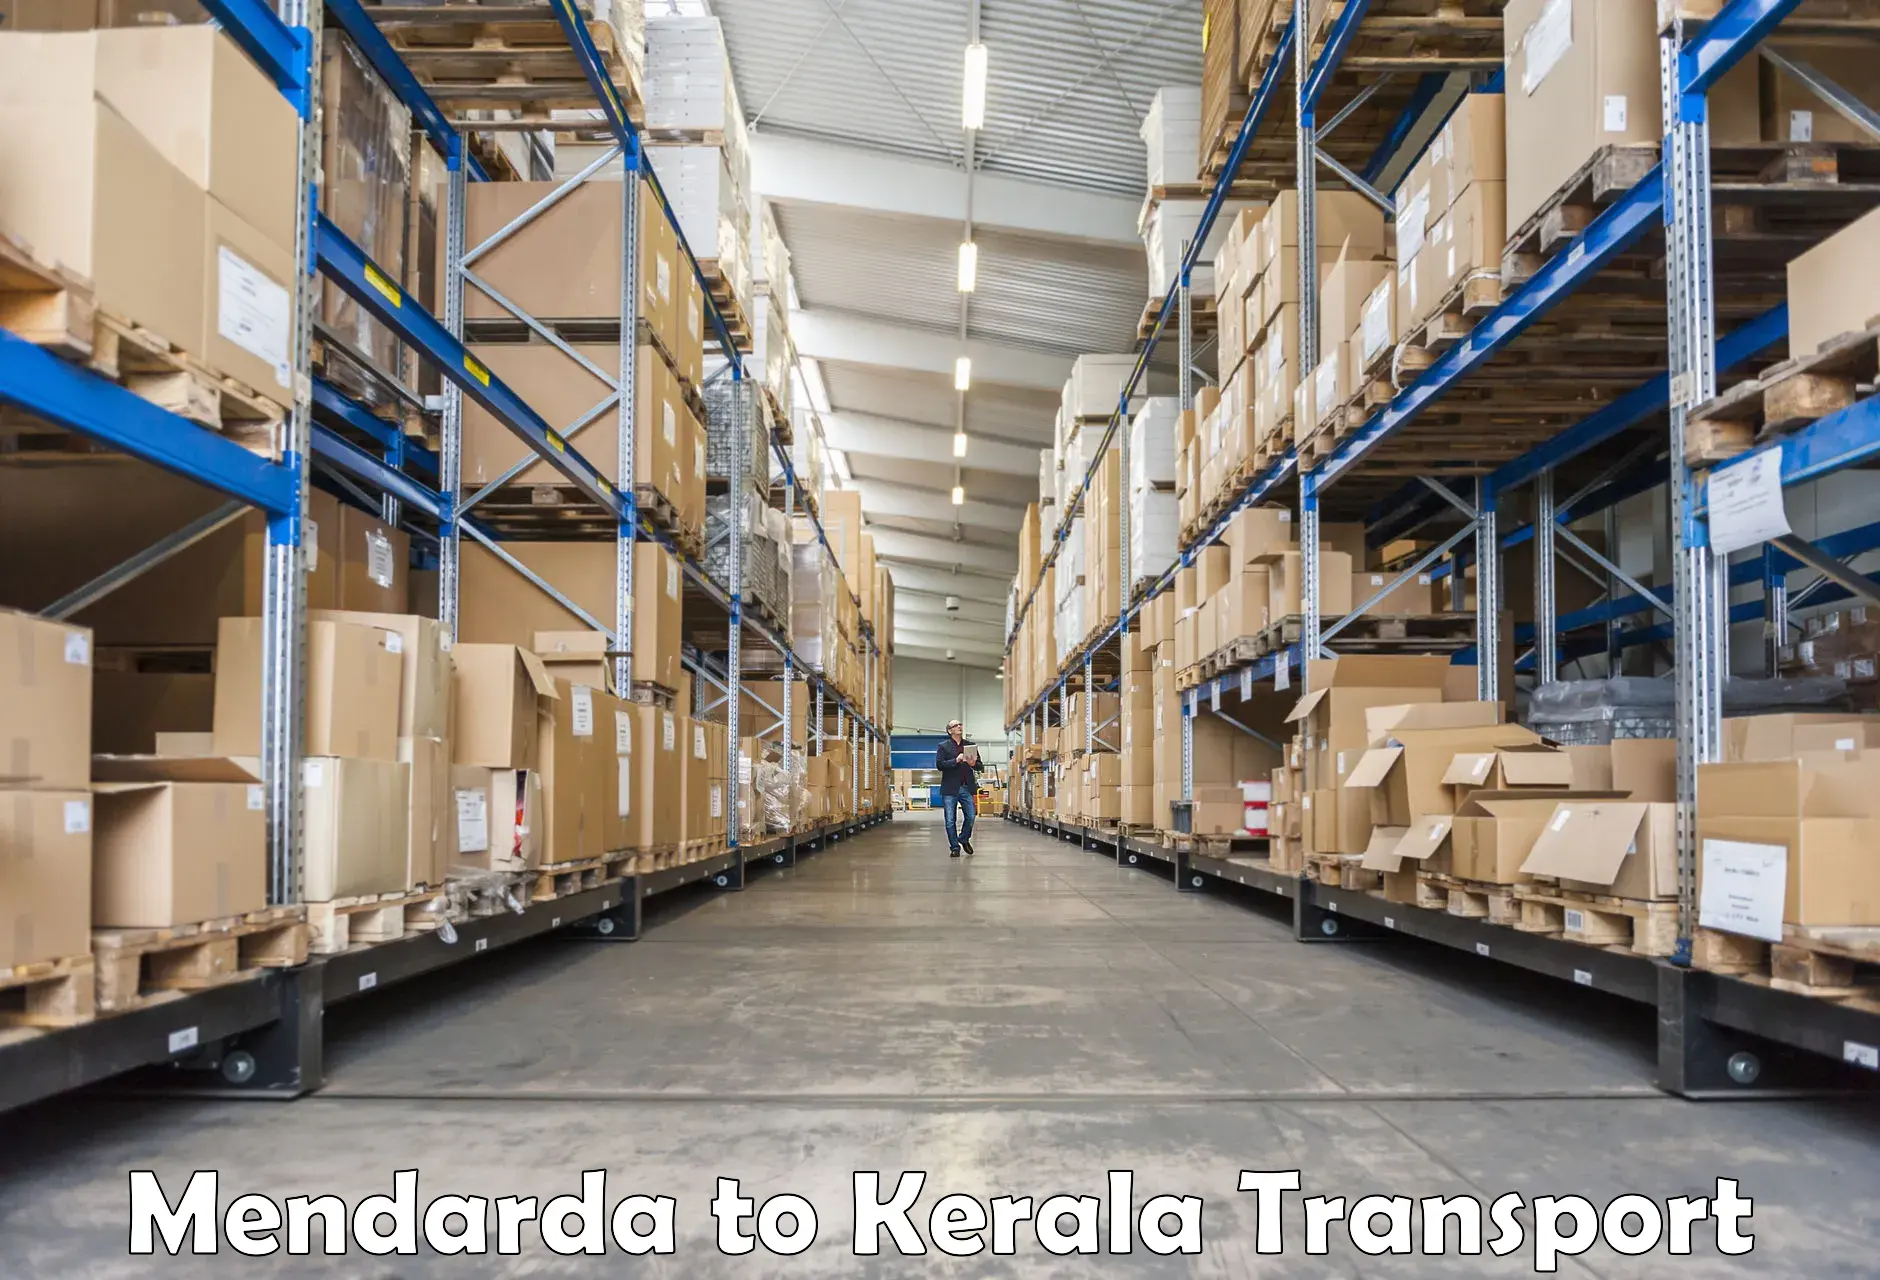 Online transport booking Mendarda to Munnar